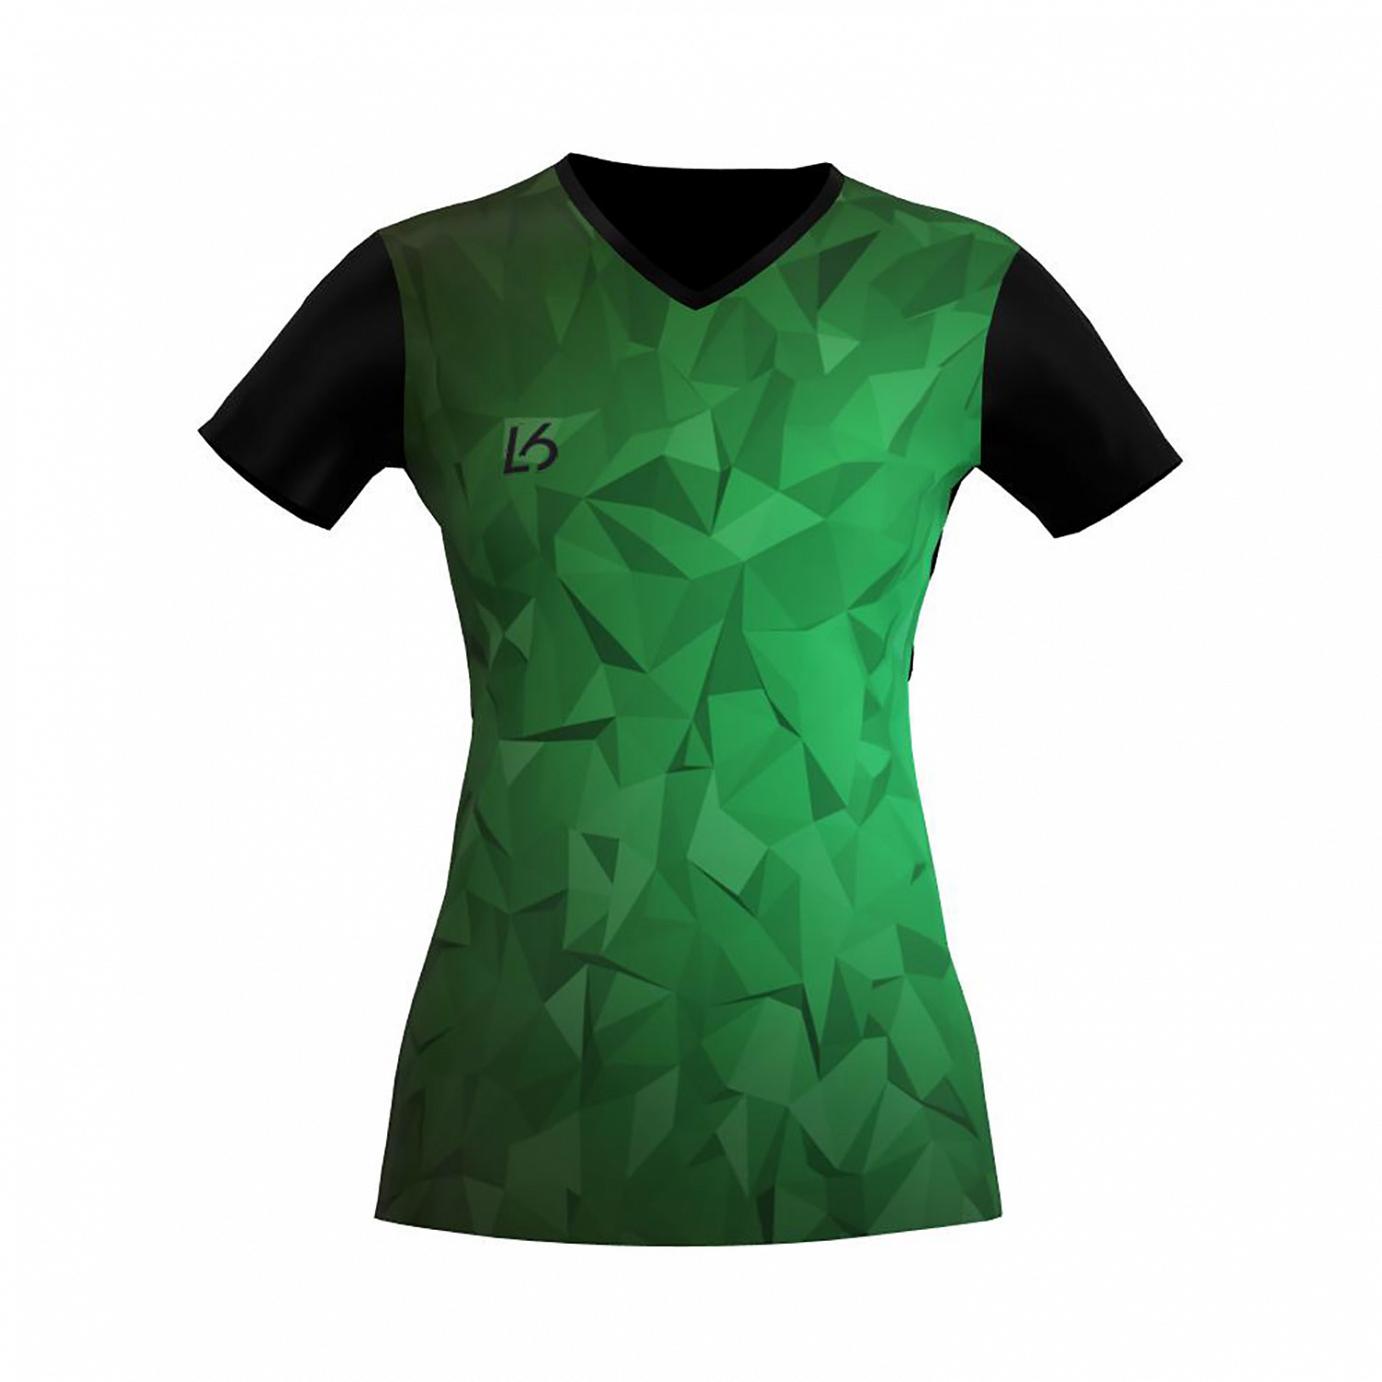 L6 V-Neck Trikot Women - Polygon Green